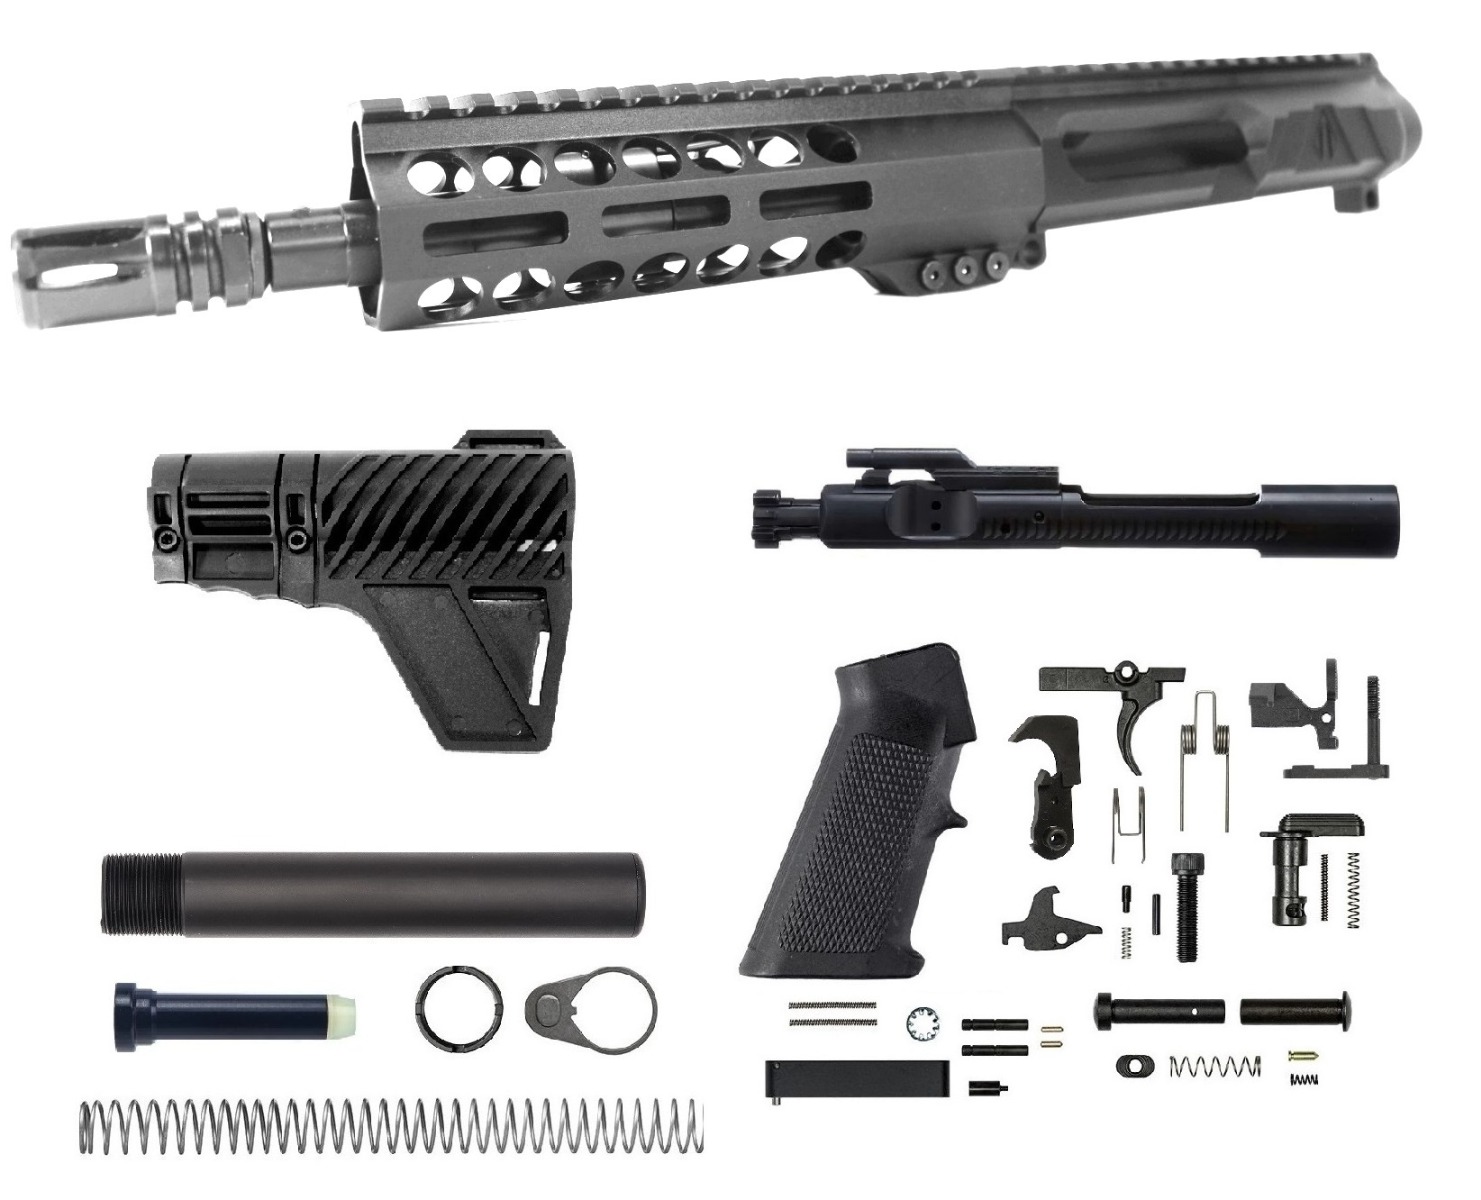 8 inch AR-15 LEFT HANDED NR Side Charging 5.56 NATO Melonite Upper Complete Kit | US Made | Lifetime Warranty